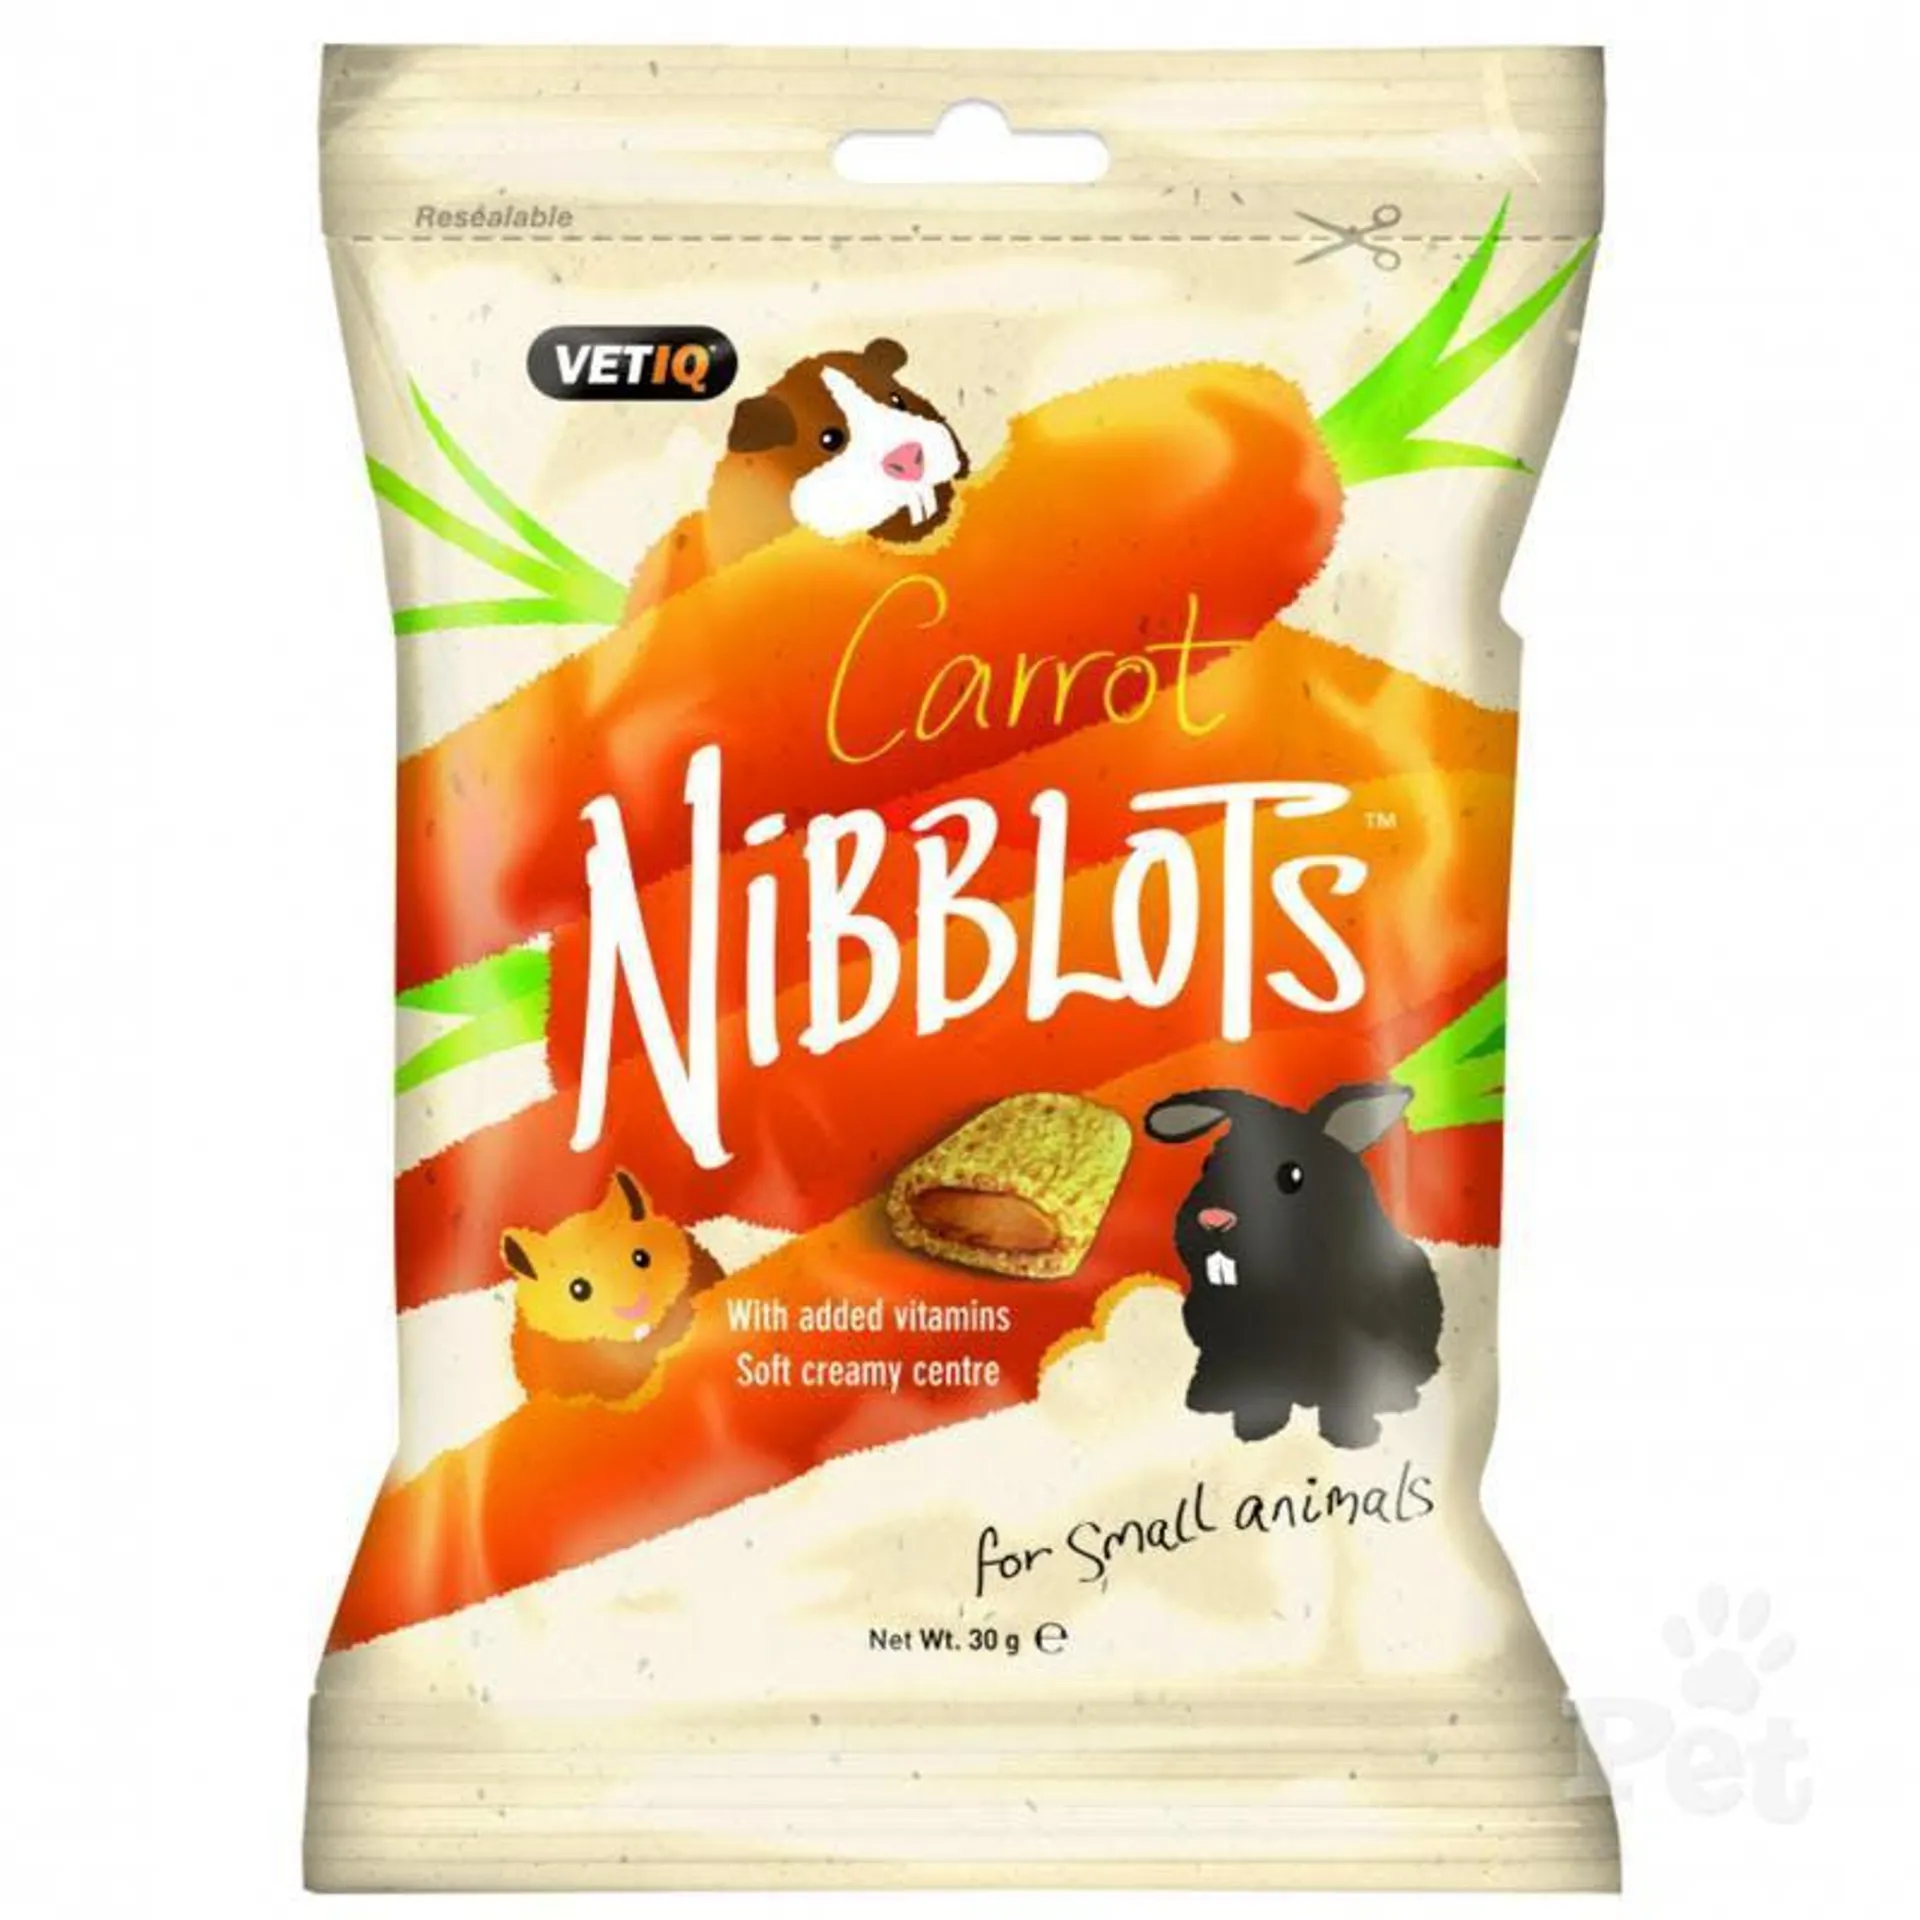 Vet IQ Nibblots Carrots